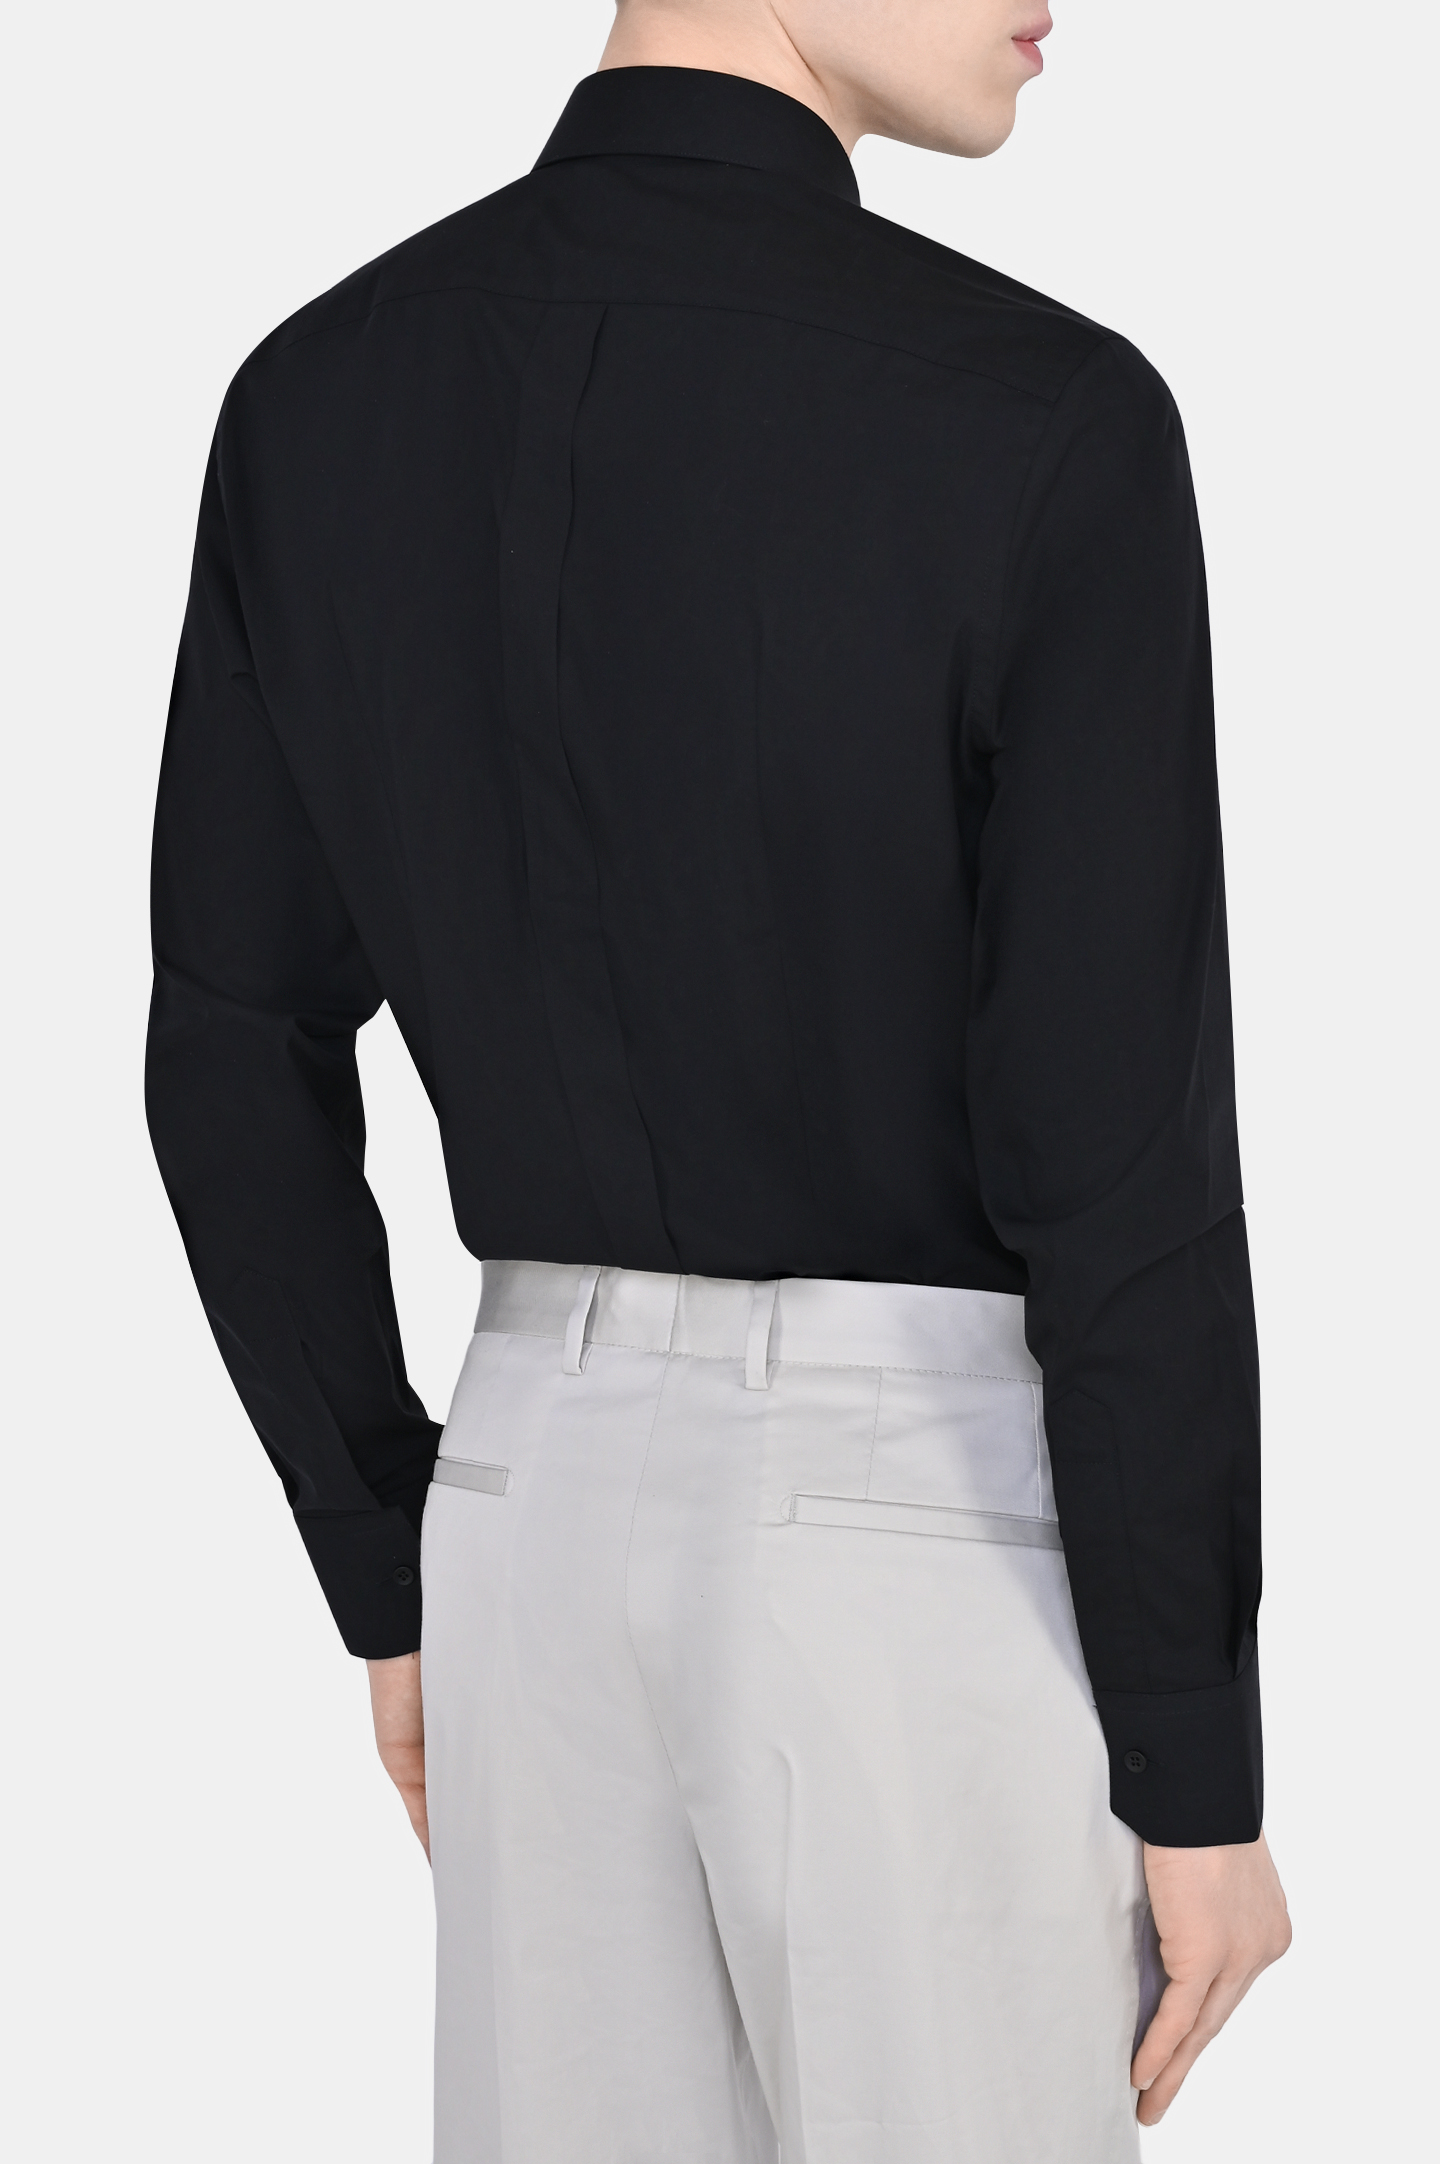 Рубашка DOLCE & GABBANA G5EJ0T FUEEE, цвет: Черный, Мужской